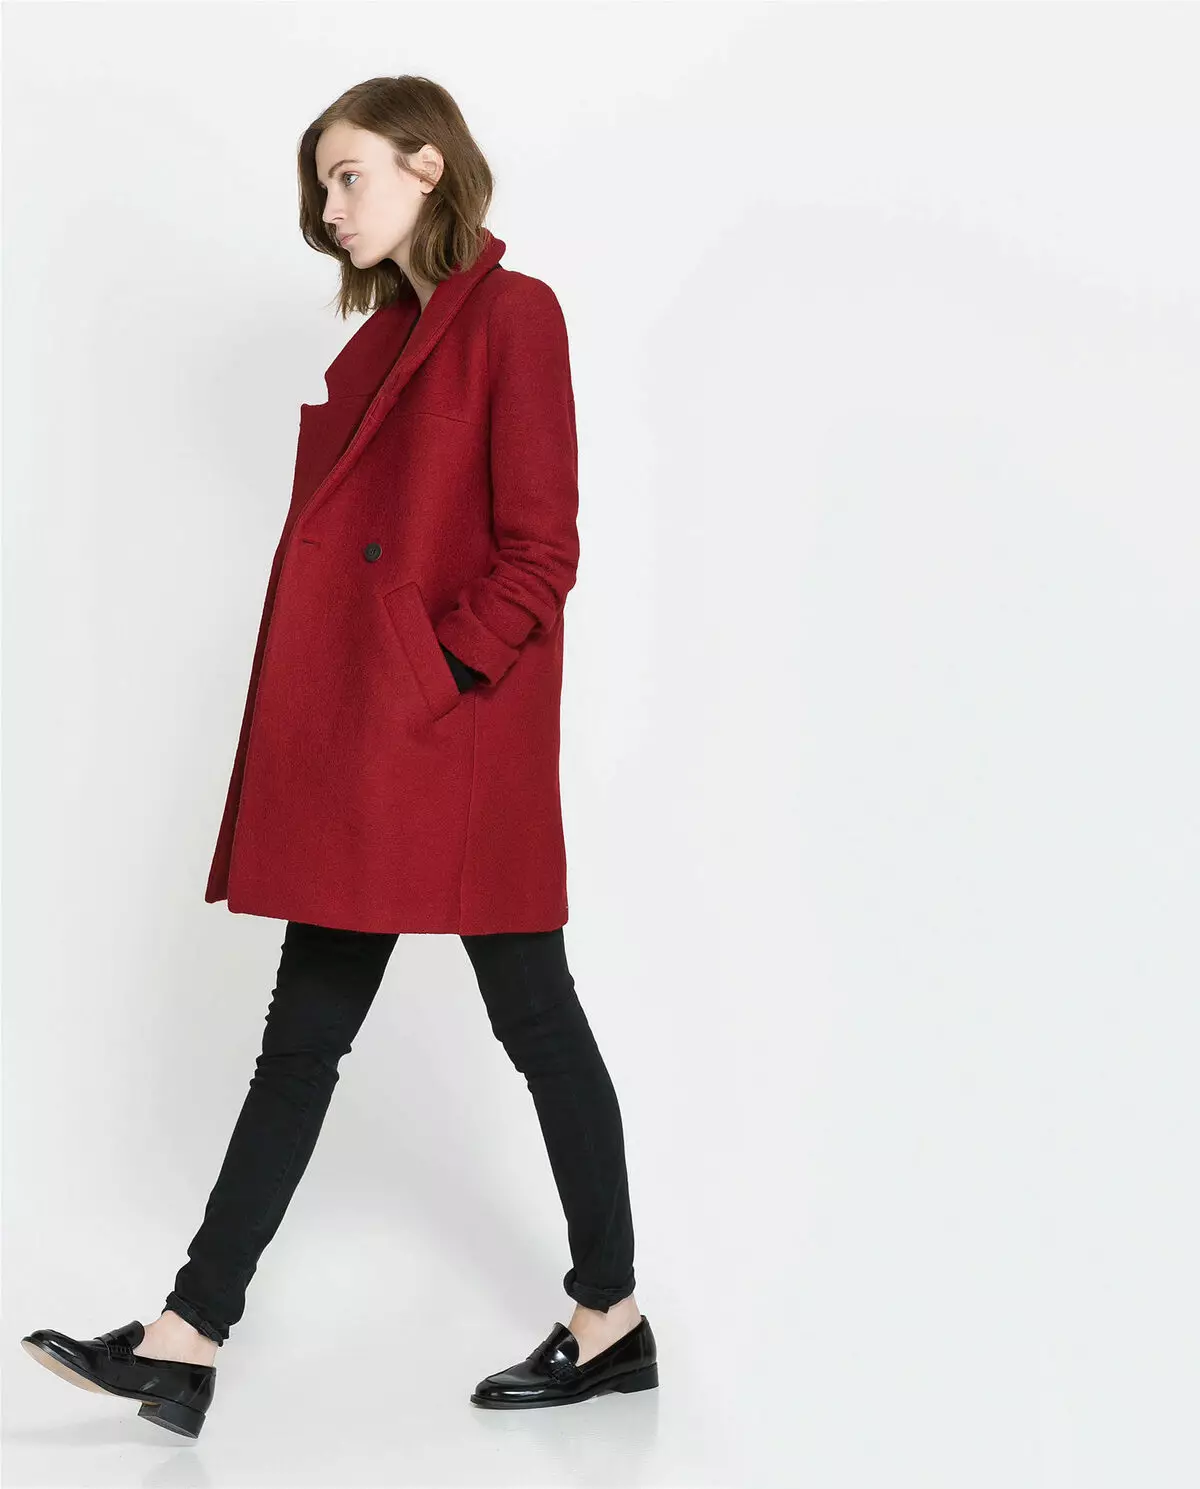 Co nosit červený kabát (77 fotek): krátký, v kleci, s šátkem, obrazy s červeným kabátem, s kloboukem, trendy 2021 608_56